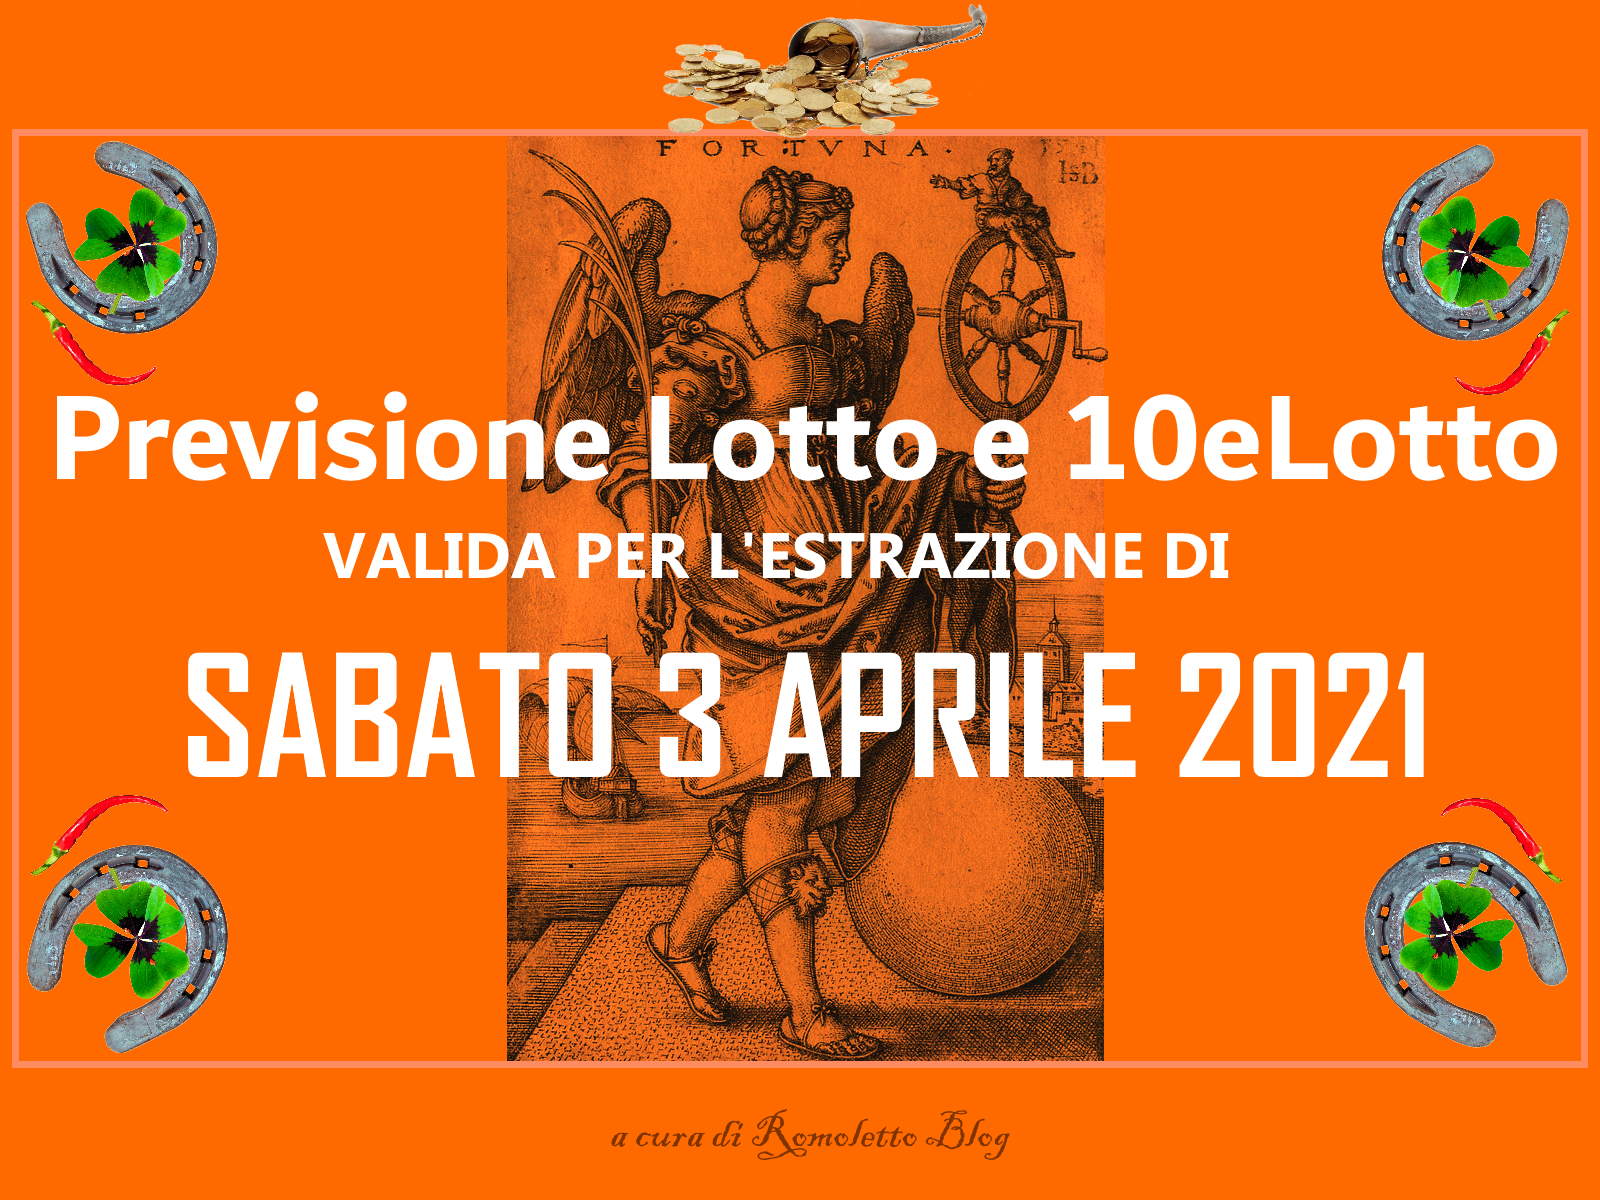 Previsione Lotto 3 Aprile 2021